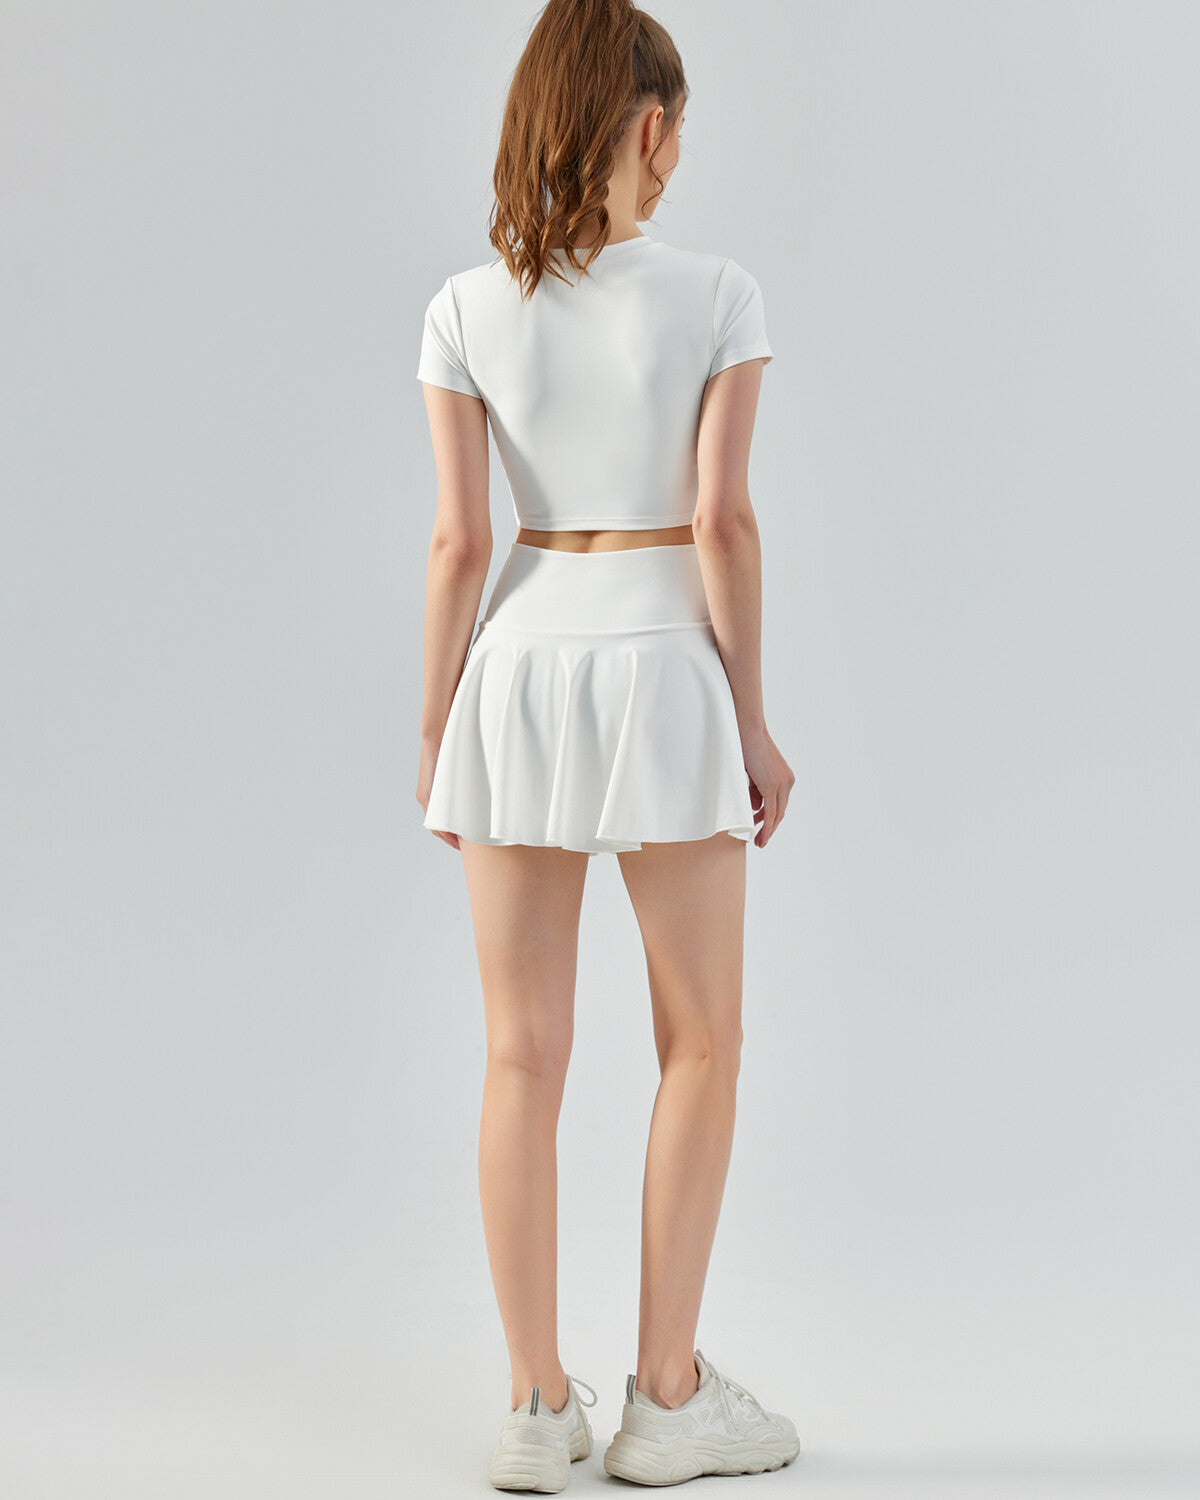 Zendaya Skirt - White